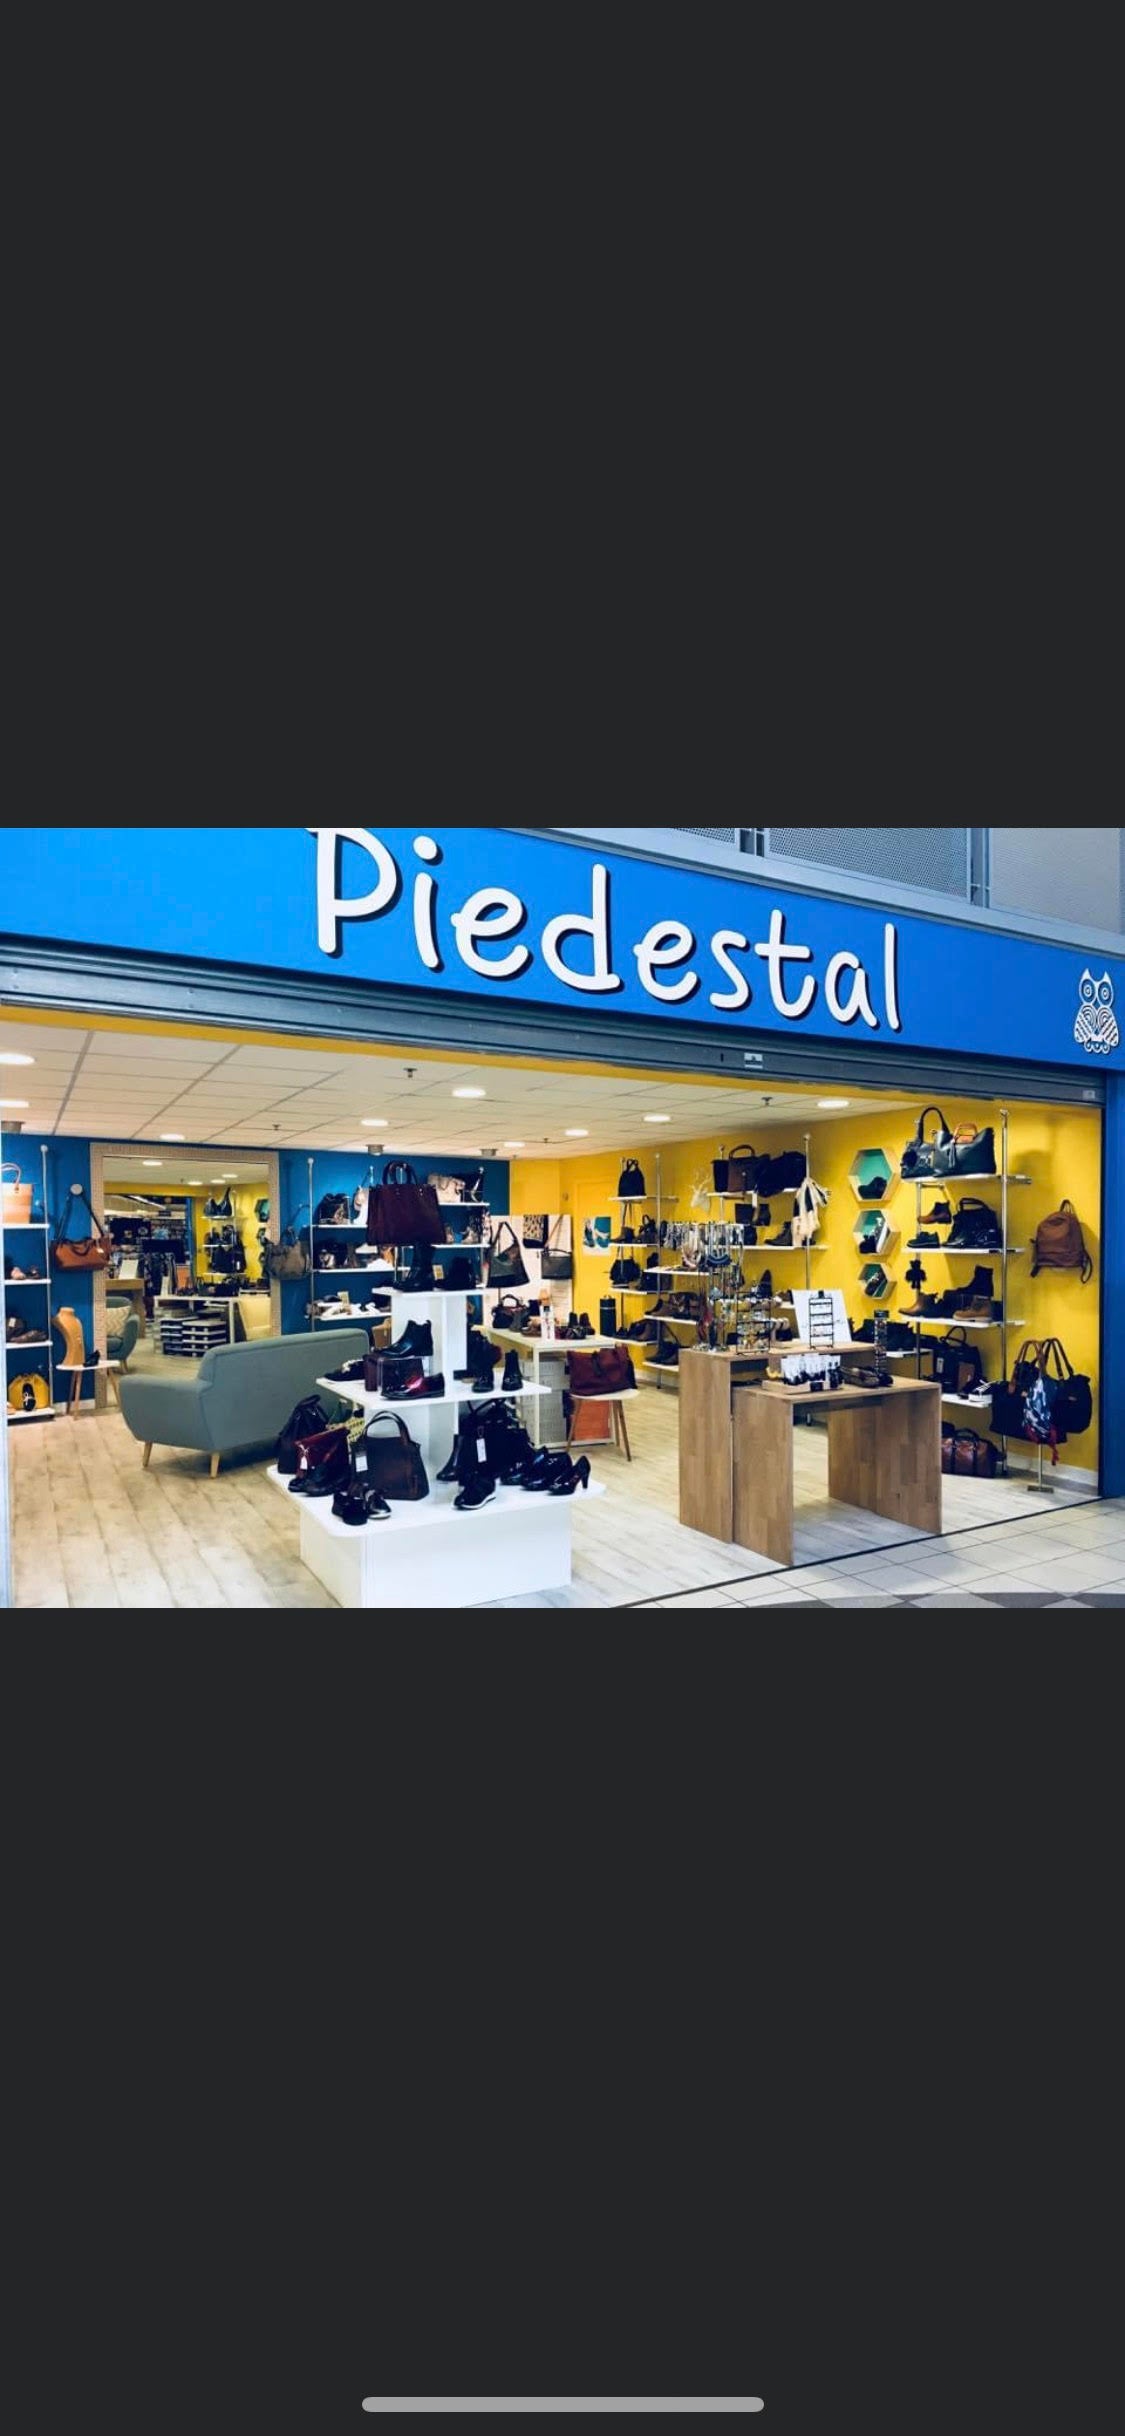 Bon d'achat chez Piedestal / Boutique de chaussures